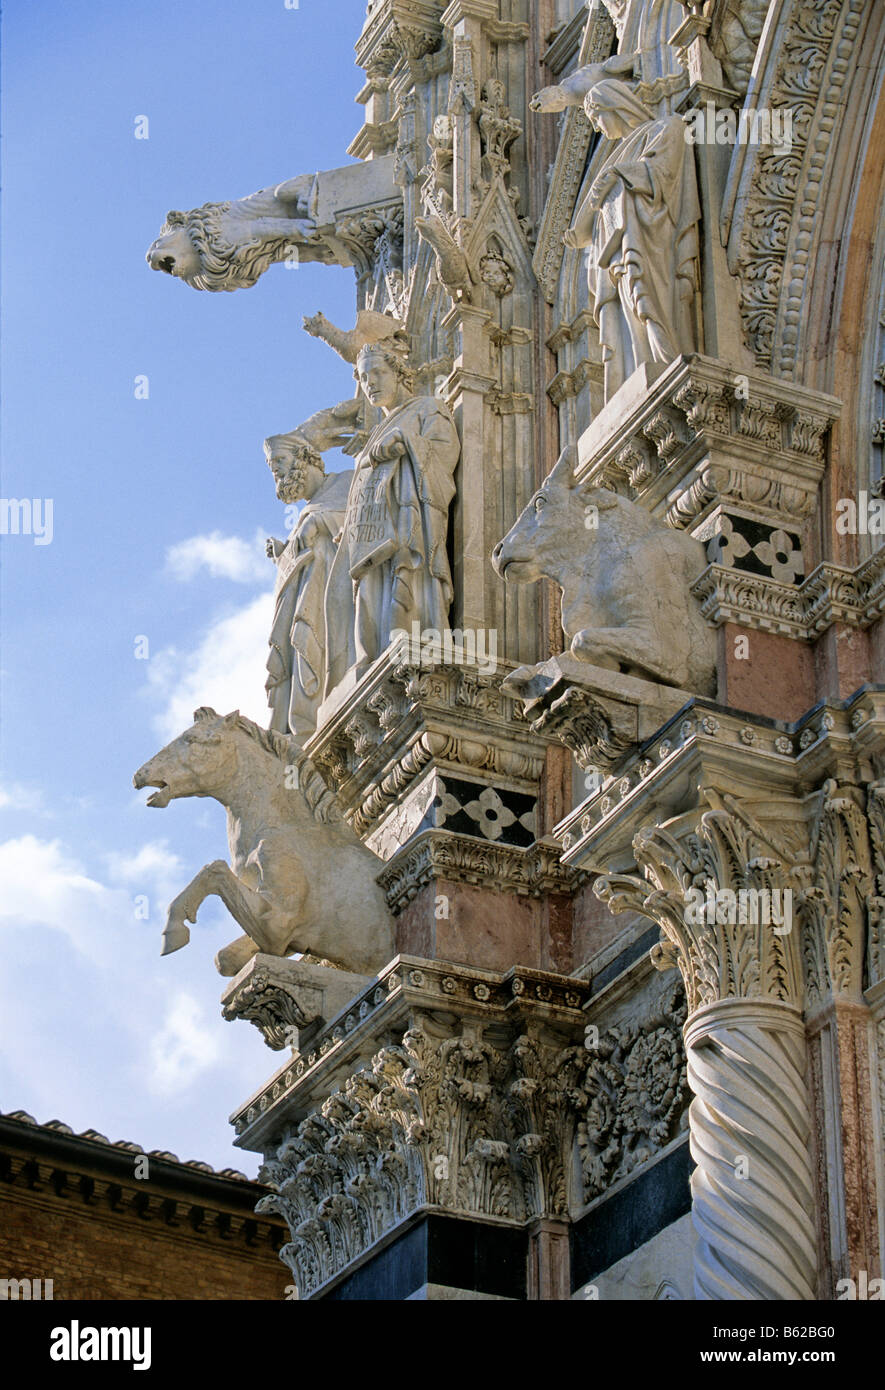 Duomo di Santa Maria Assunta, facciata, dettaglio con statue, figure di animali, Siena, Toscana, Italia, Europa Foto Stock